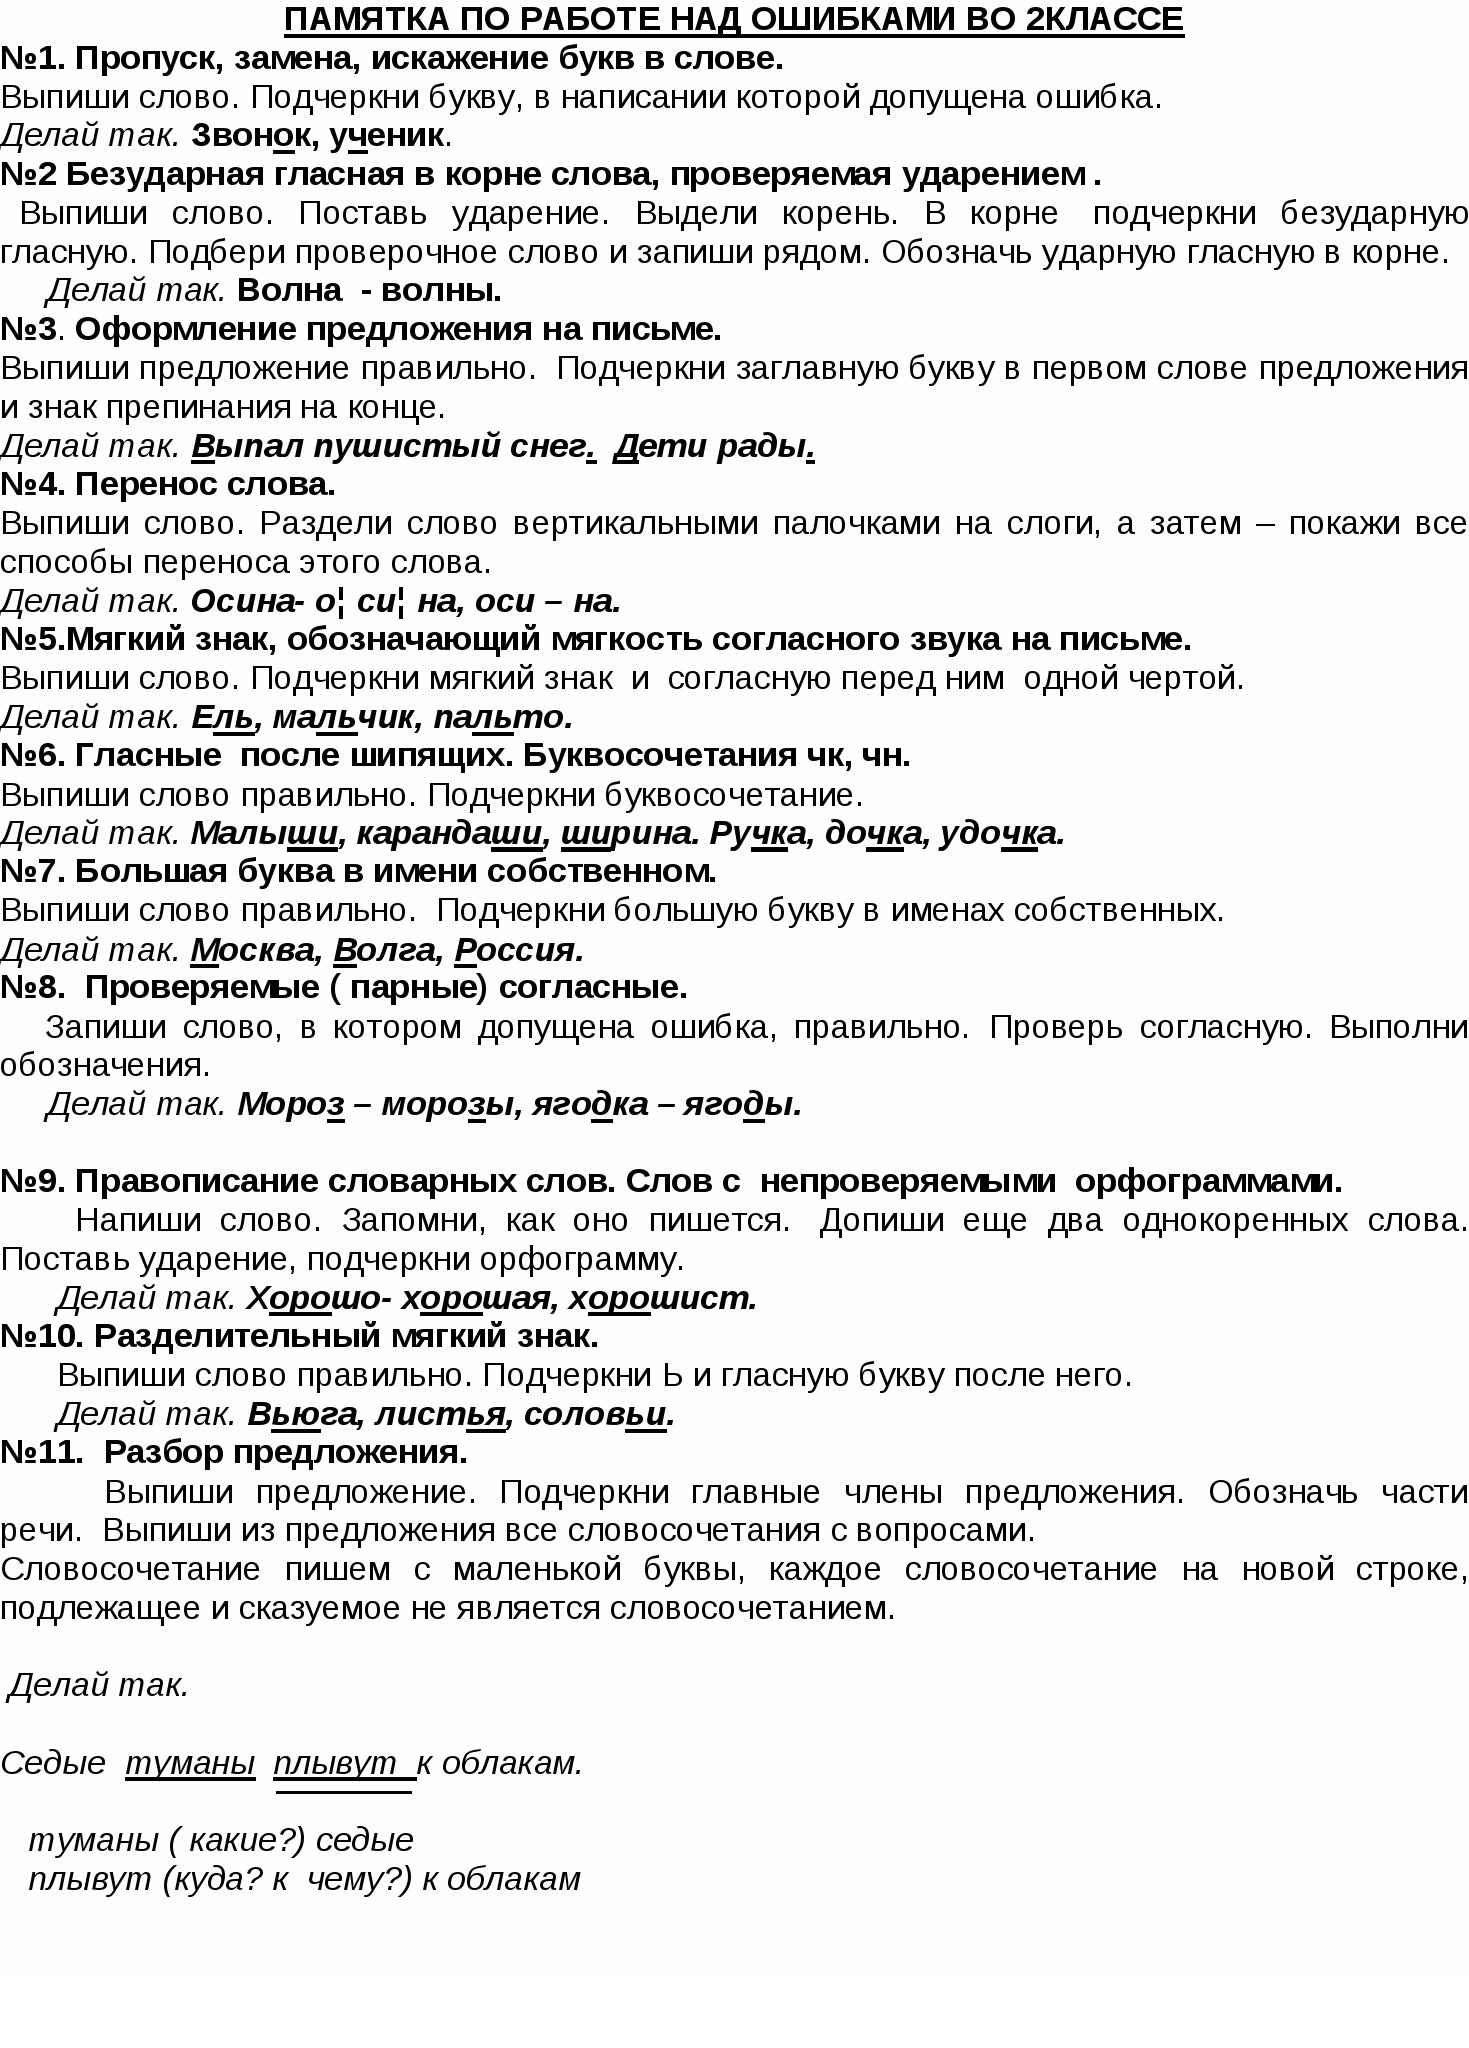 Методическая разработка Памятка выполнения работы над ошибками по русскому языку